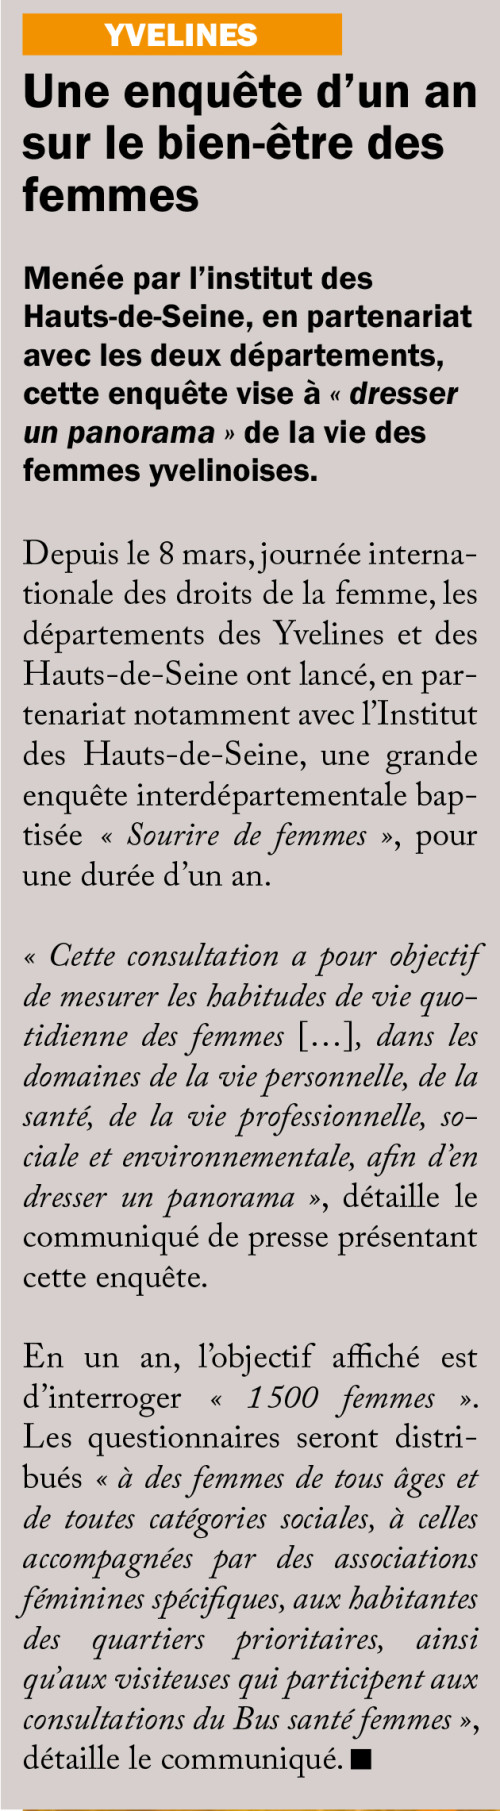 La-Gazette-des-Yvelines-240321-Une-enquete-dun-an-sur-le-bien-etre-des-femmes.jpg